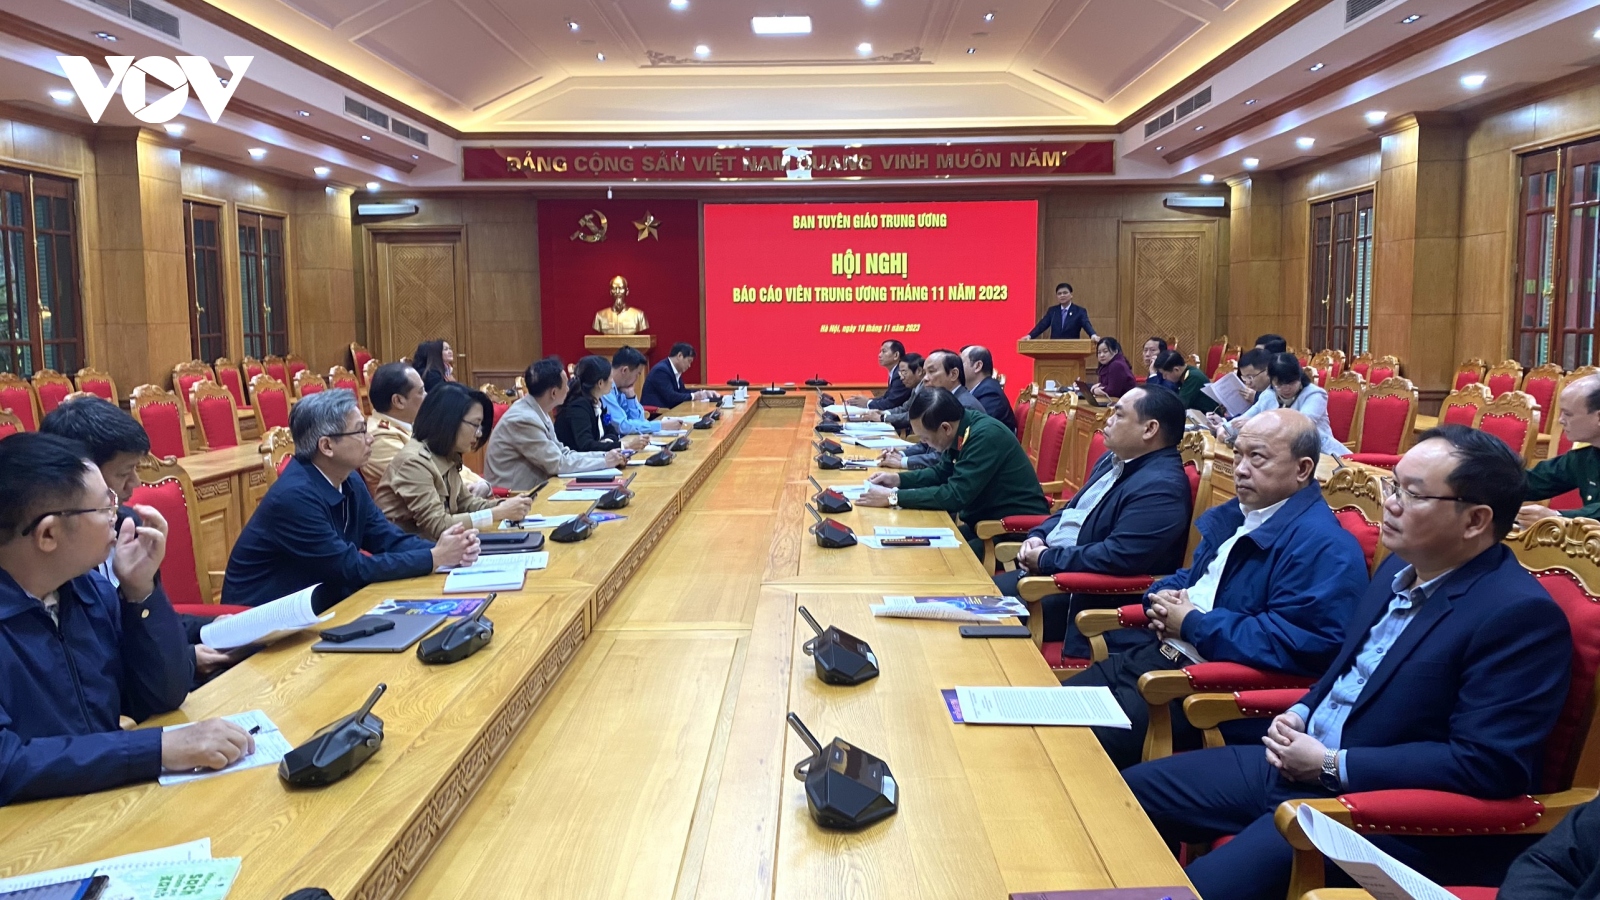 1.100 đại biểu dự Đại hội lần thứ 13 Công đoàn Việt Nam